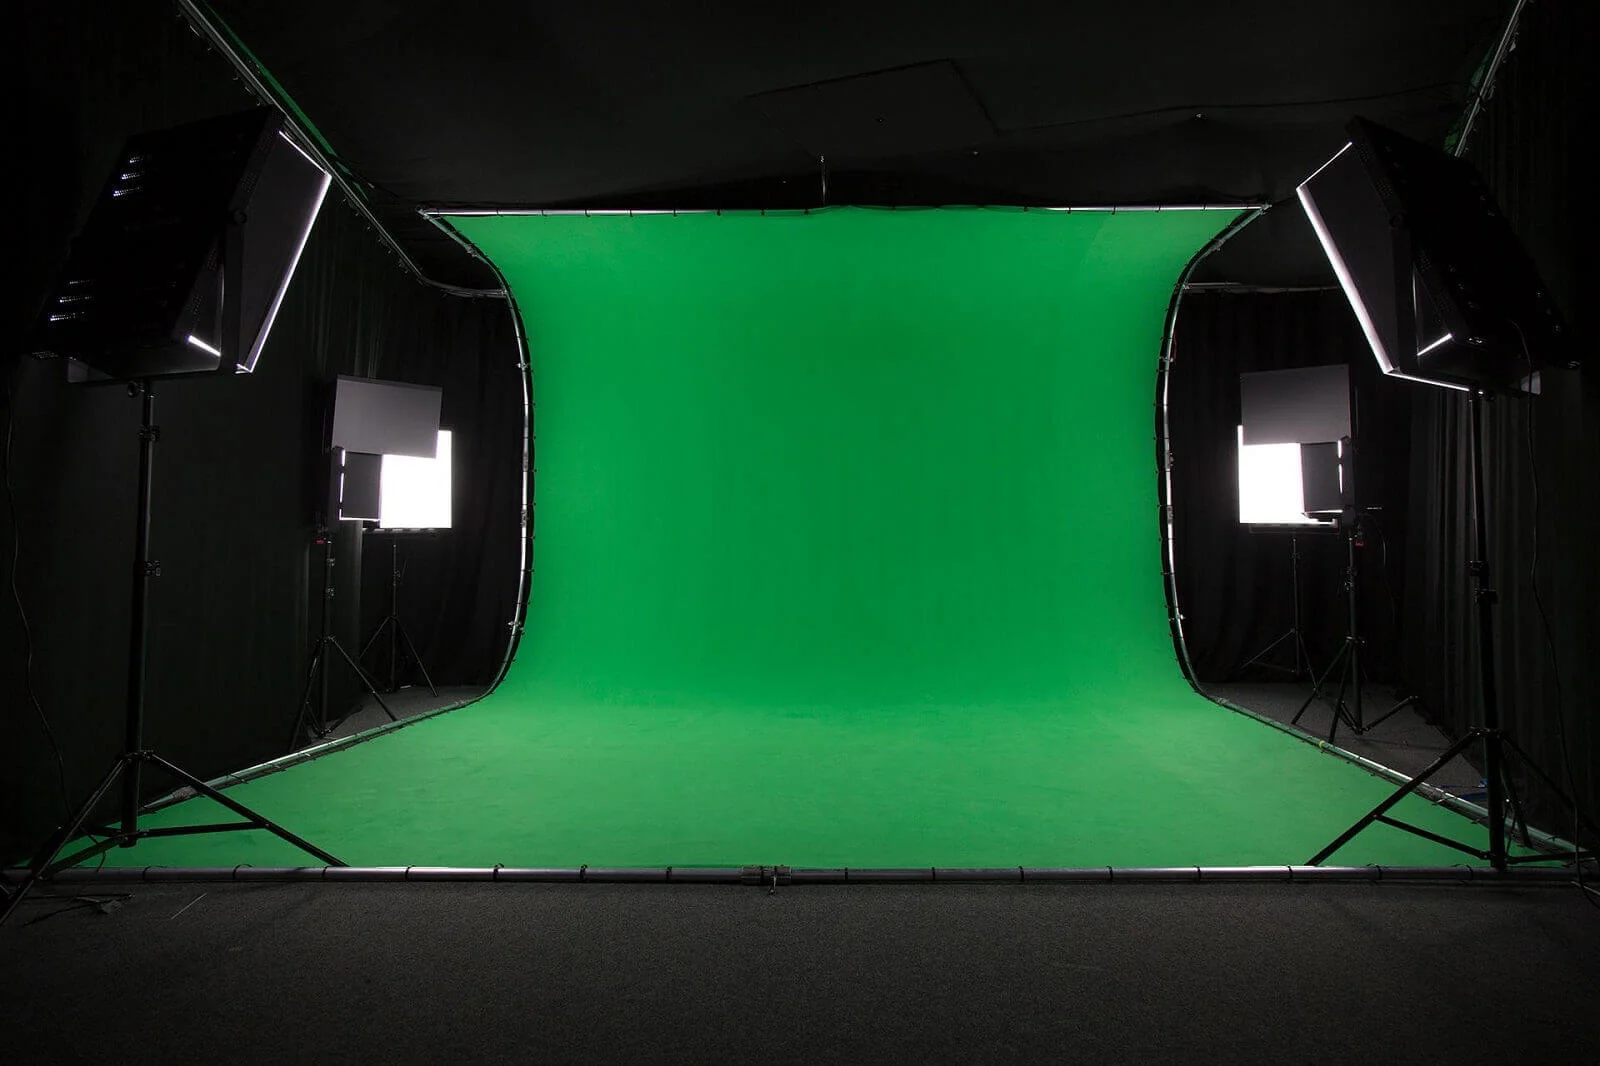 Hãy khám phá những khả năng tuyệt vời của màn hình xanh trong công nghệ làm phim với ảnh liên quan đến màn hình xanh. Sẵn sàng để có những bối cảnh tuyệt vời và độc đáo cho bộ phim của bạn.